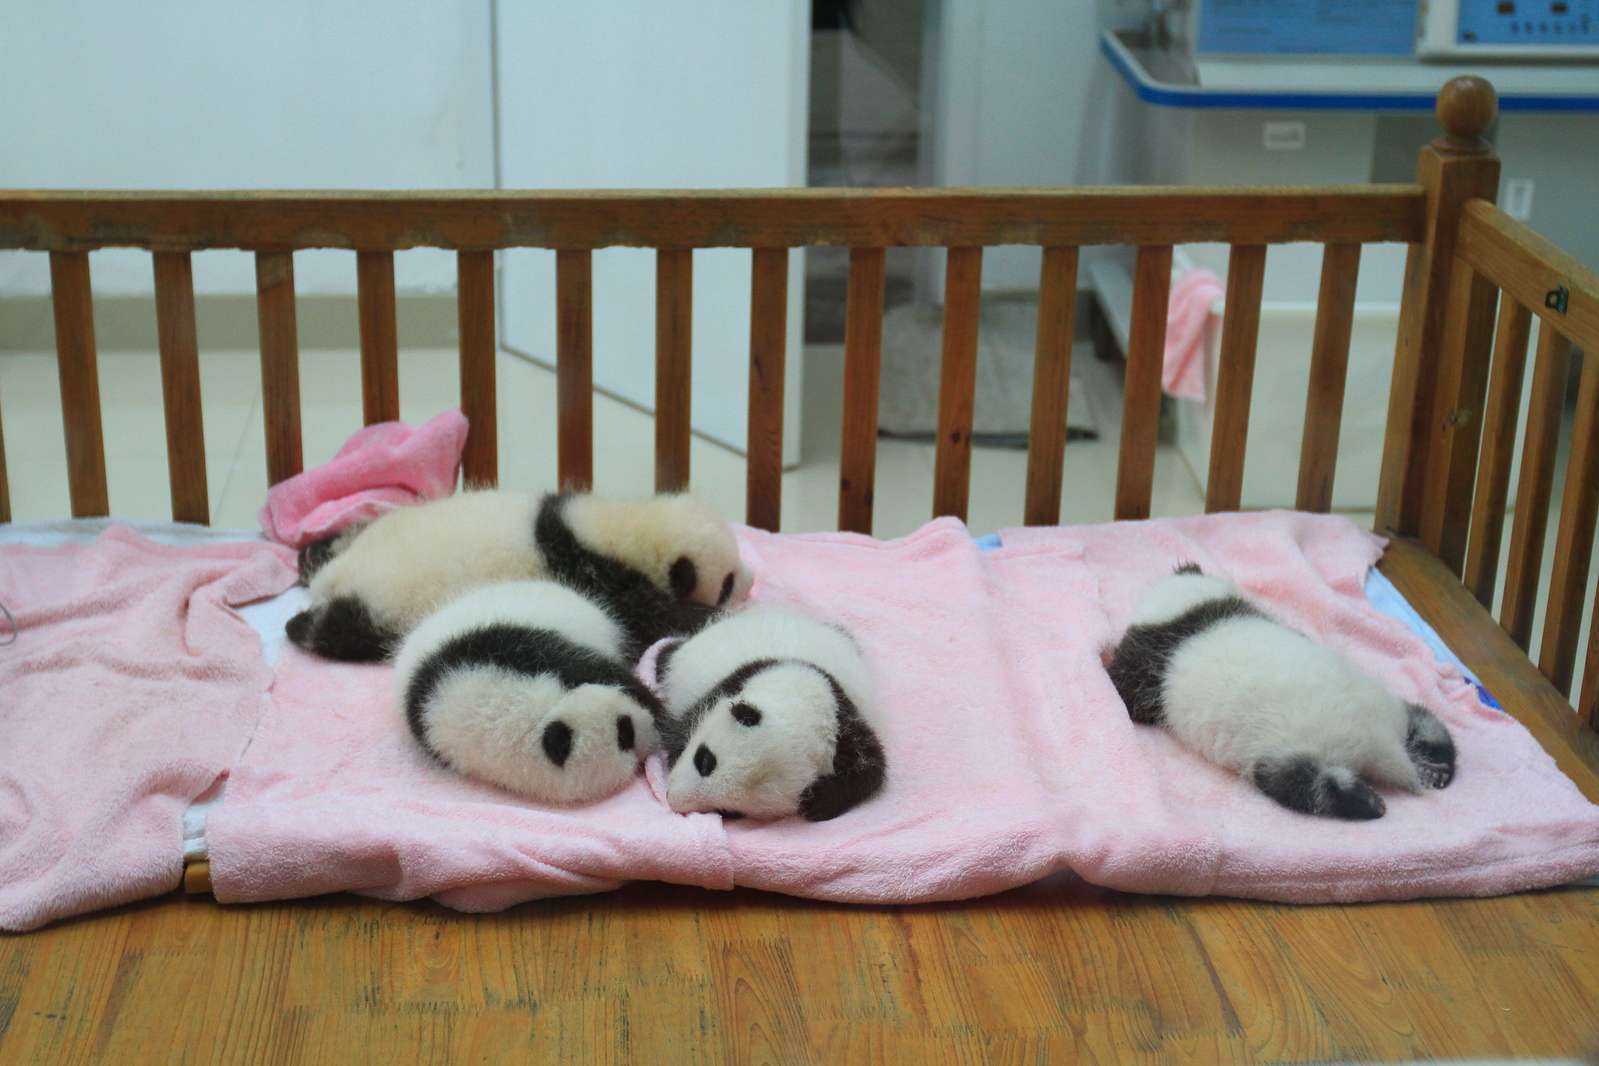 Baby panda cubs